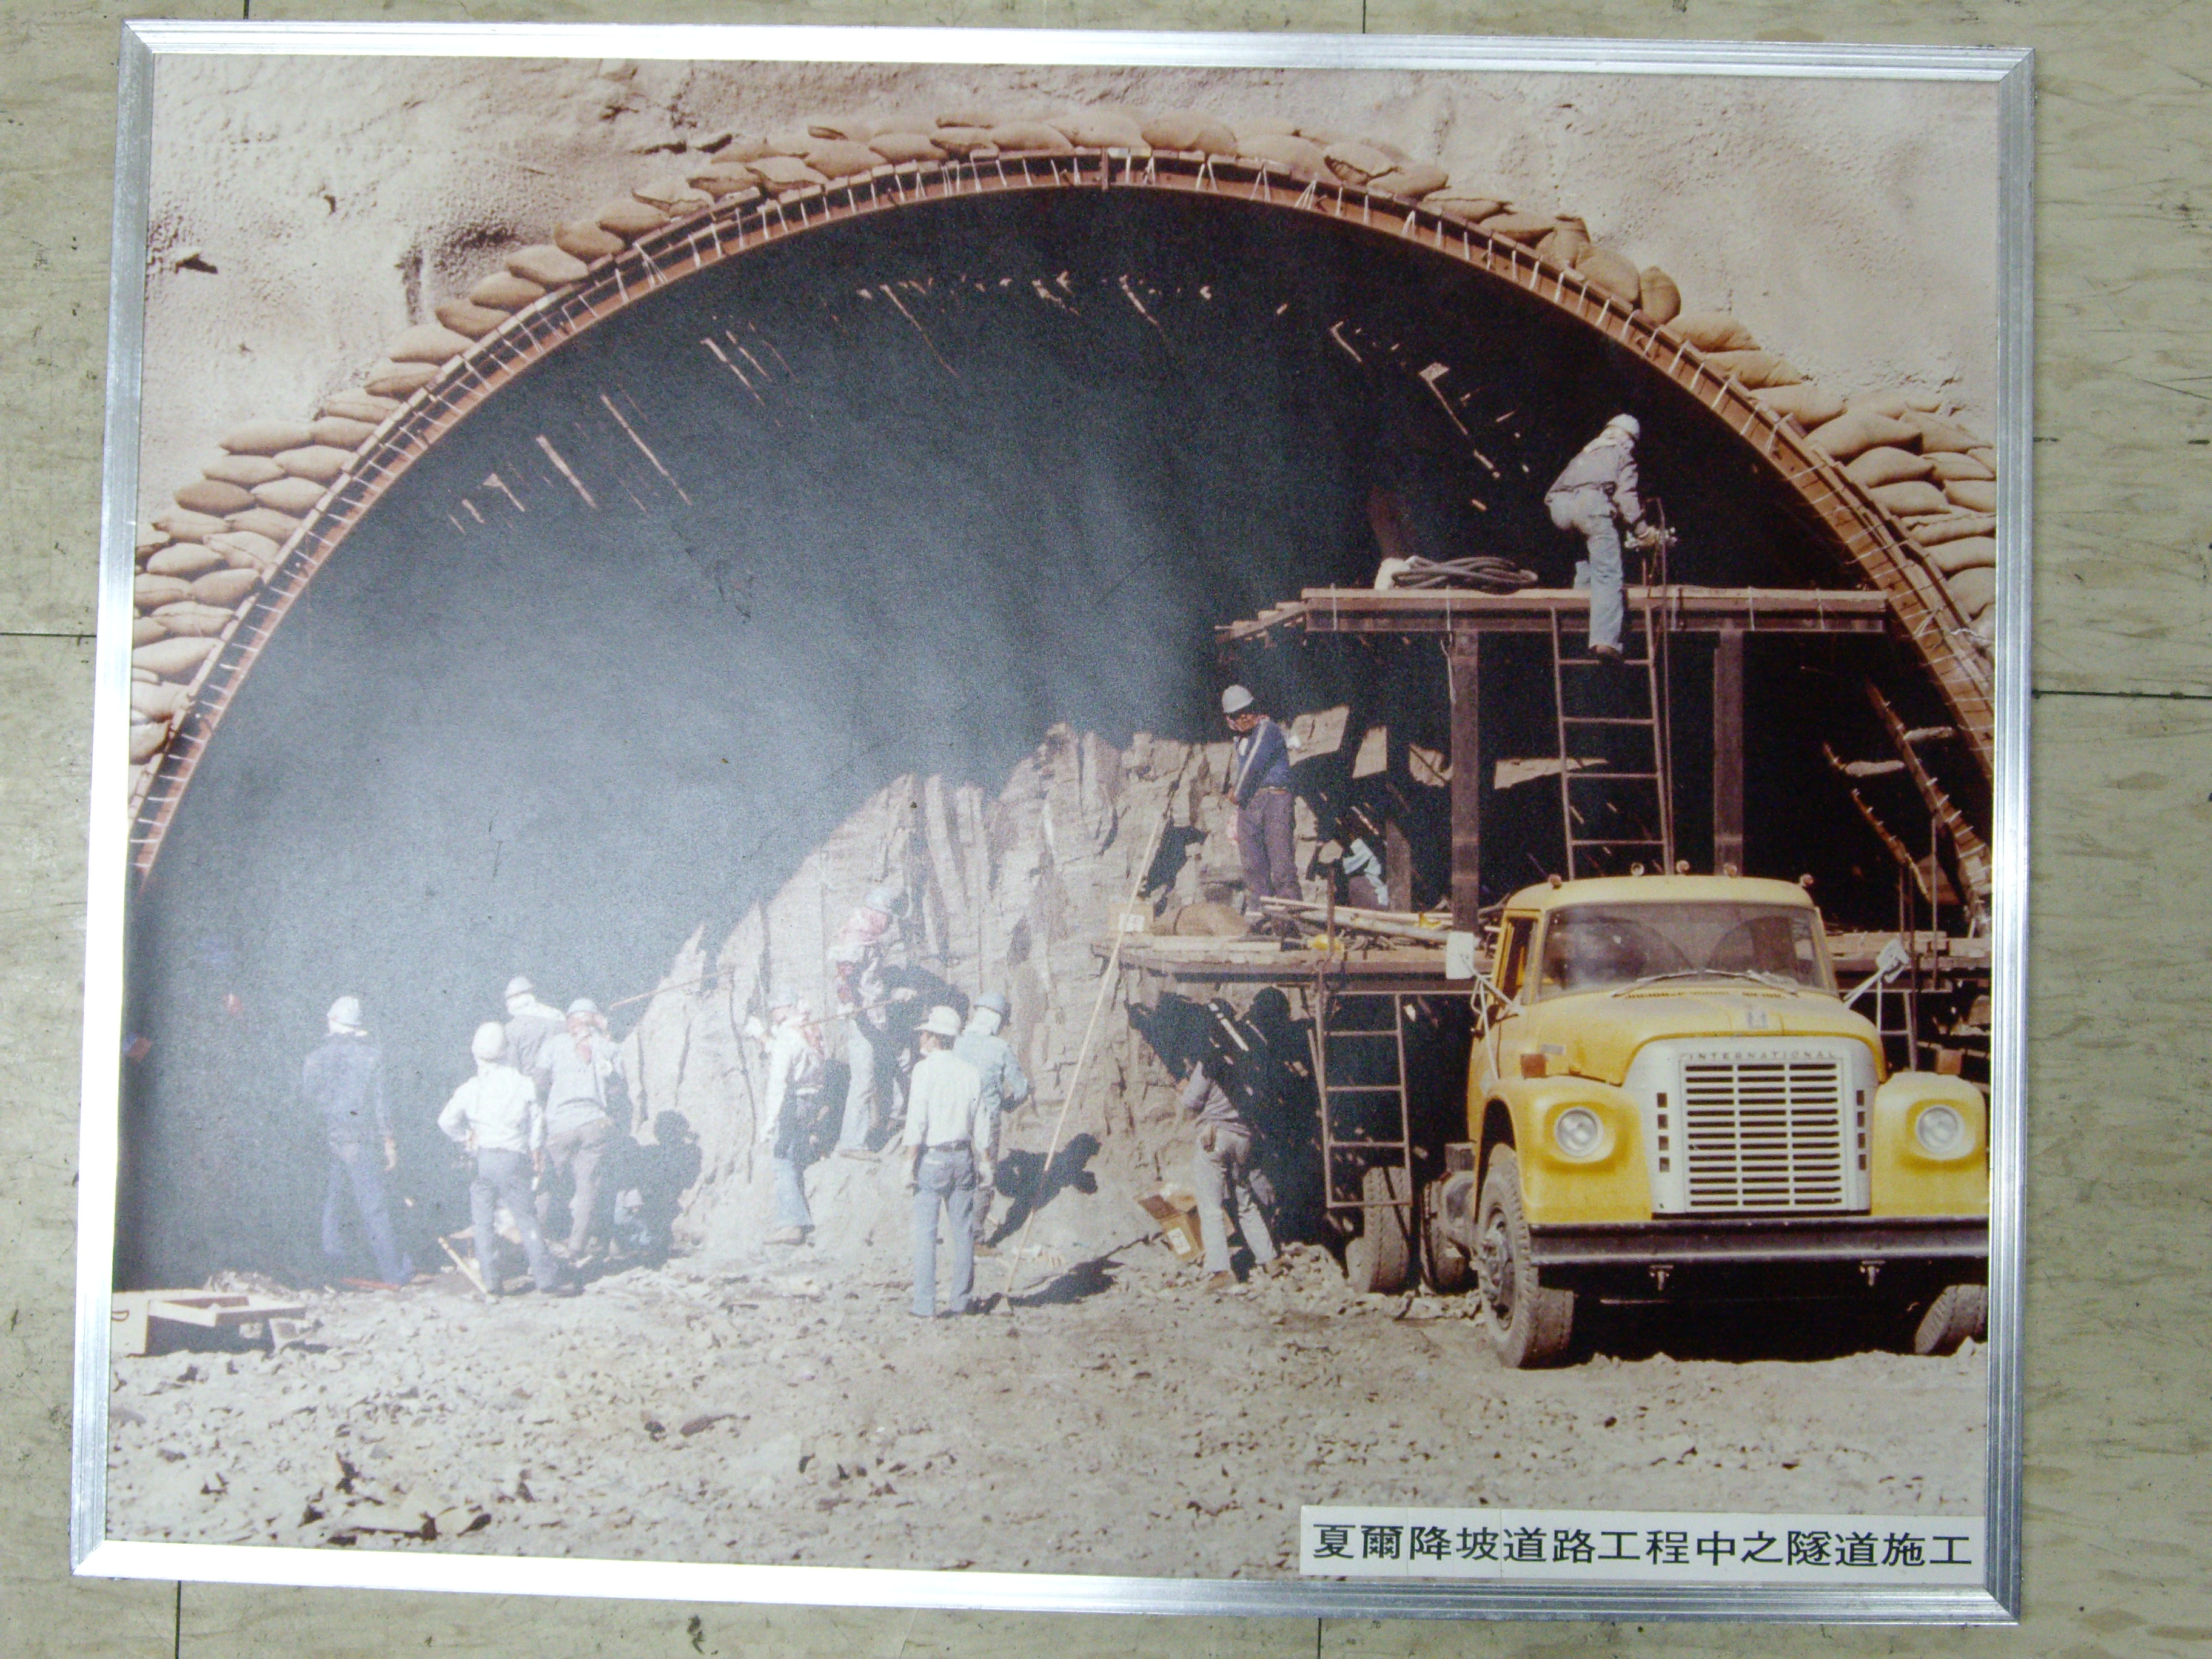 夏爾降坡道路工程隧道施工(裱框照)